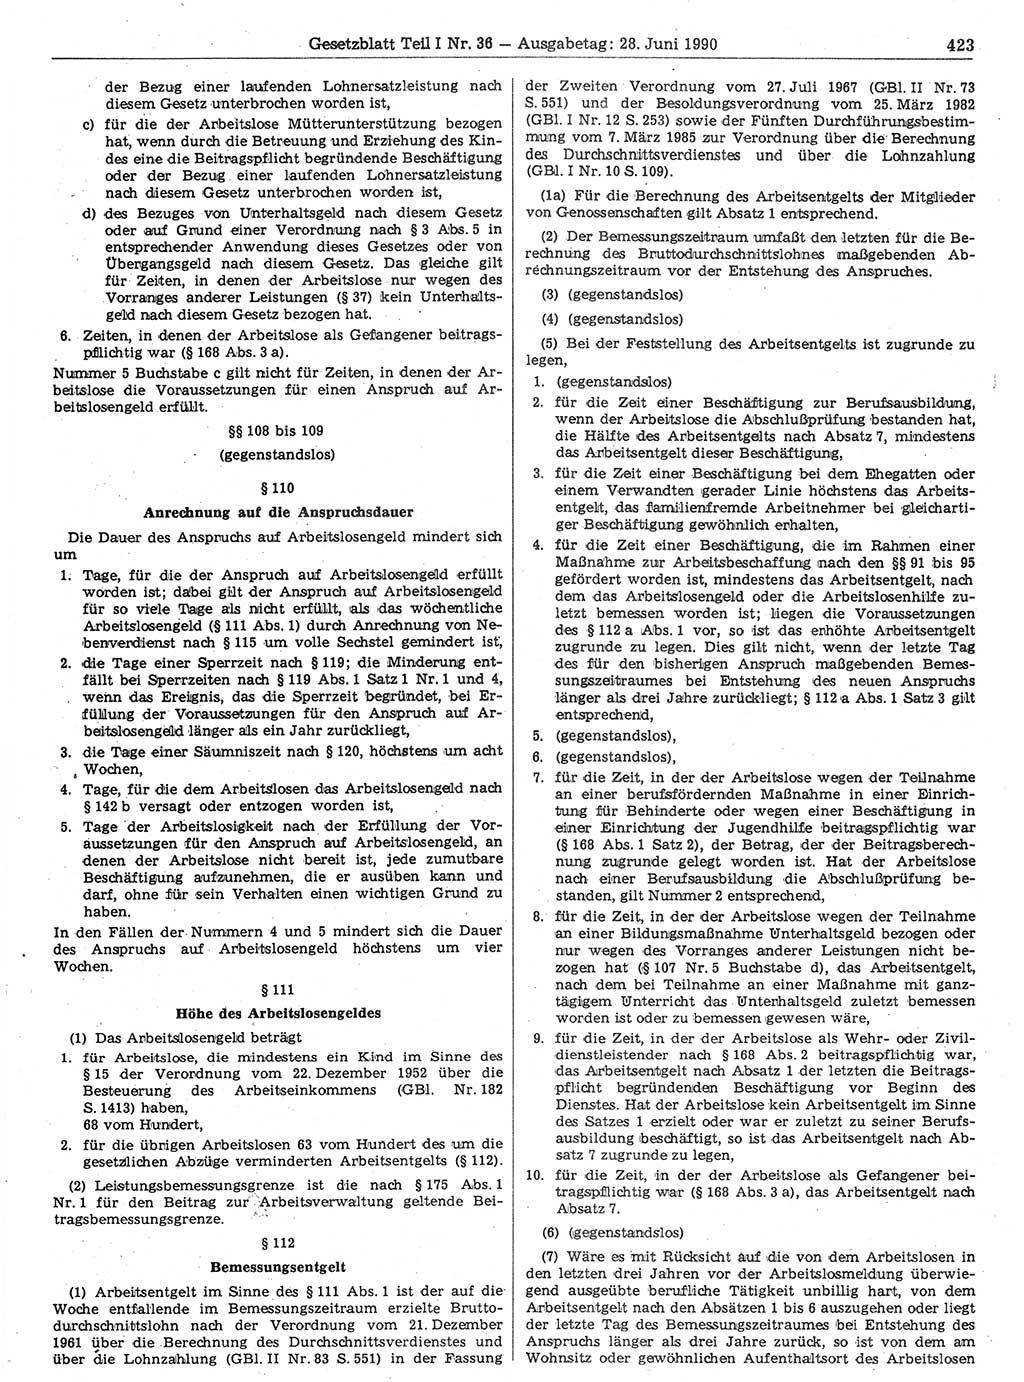 Gesetzblatt (GBl.) der Deutschen Demokratischen Republik (DDR) Teil Ⅰ 1990, Seite 423 (GBl. DDR Ⅰ 1990, S. 423)